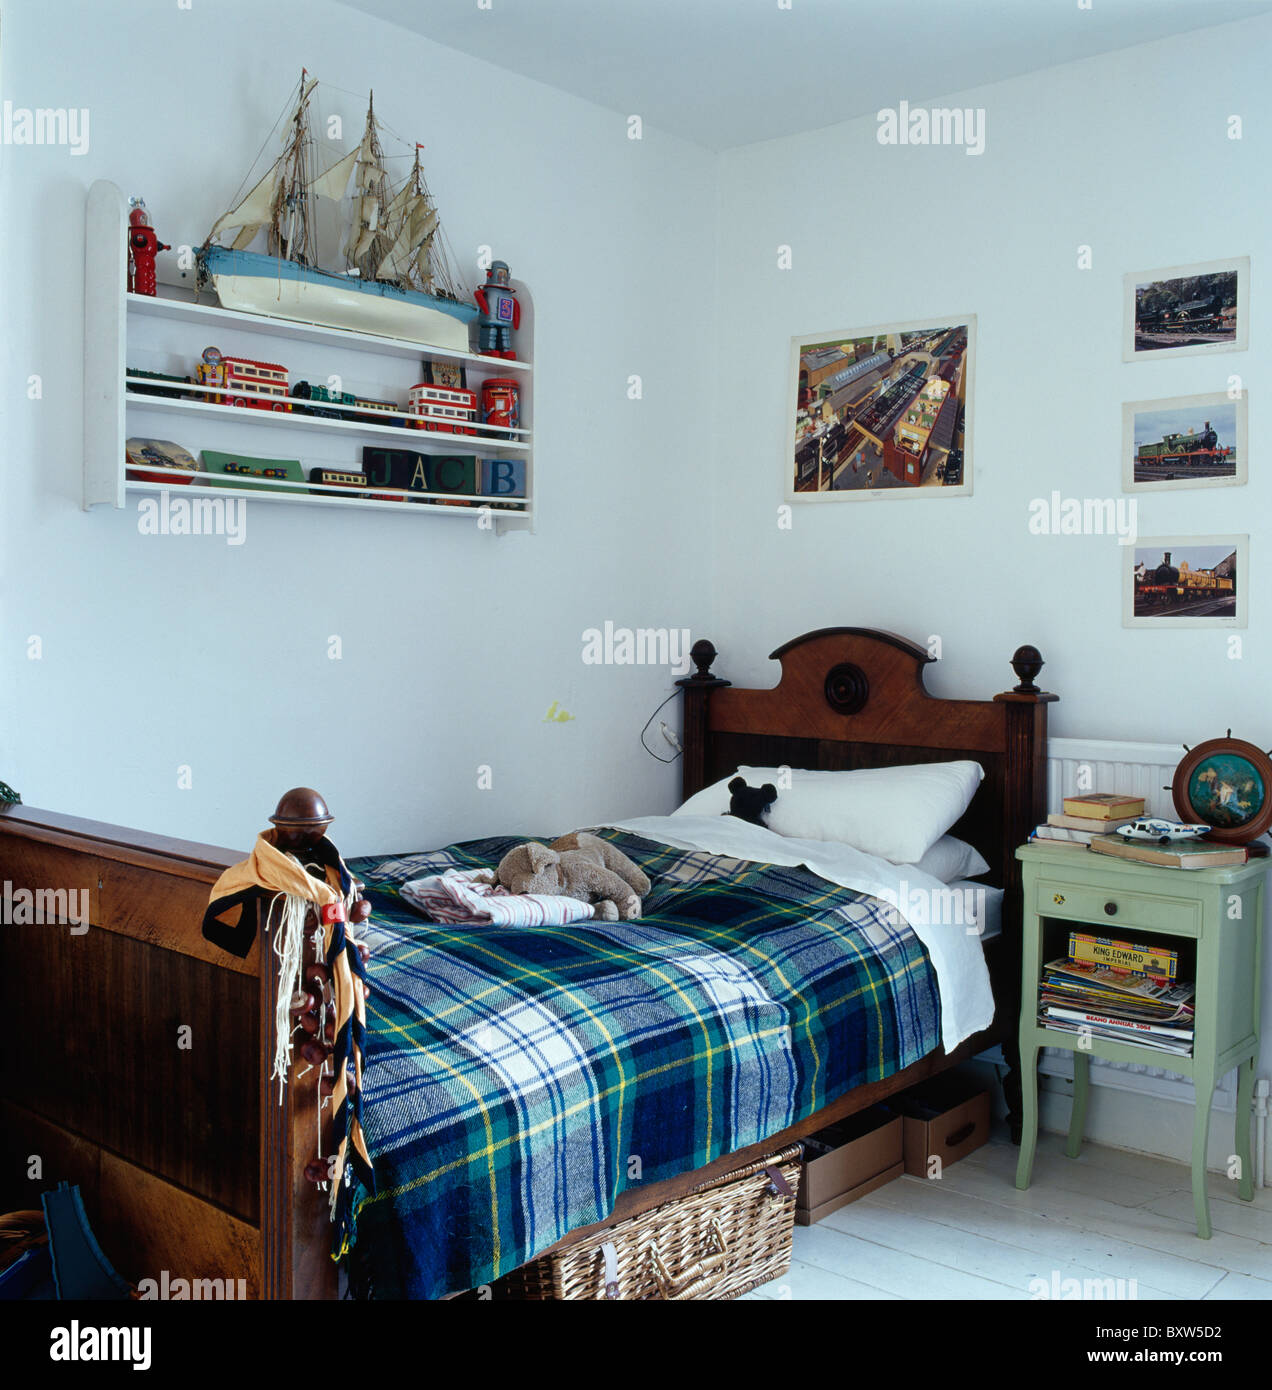 Plaid azul alfombra y ropa blanca de cama de madera antigua en blanco del  niño dormitorio con modelo de barco en la pequeña unidad de estante de  pared Fotografía de stock -